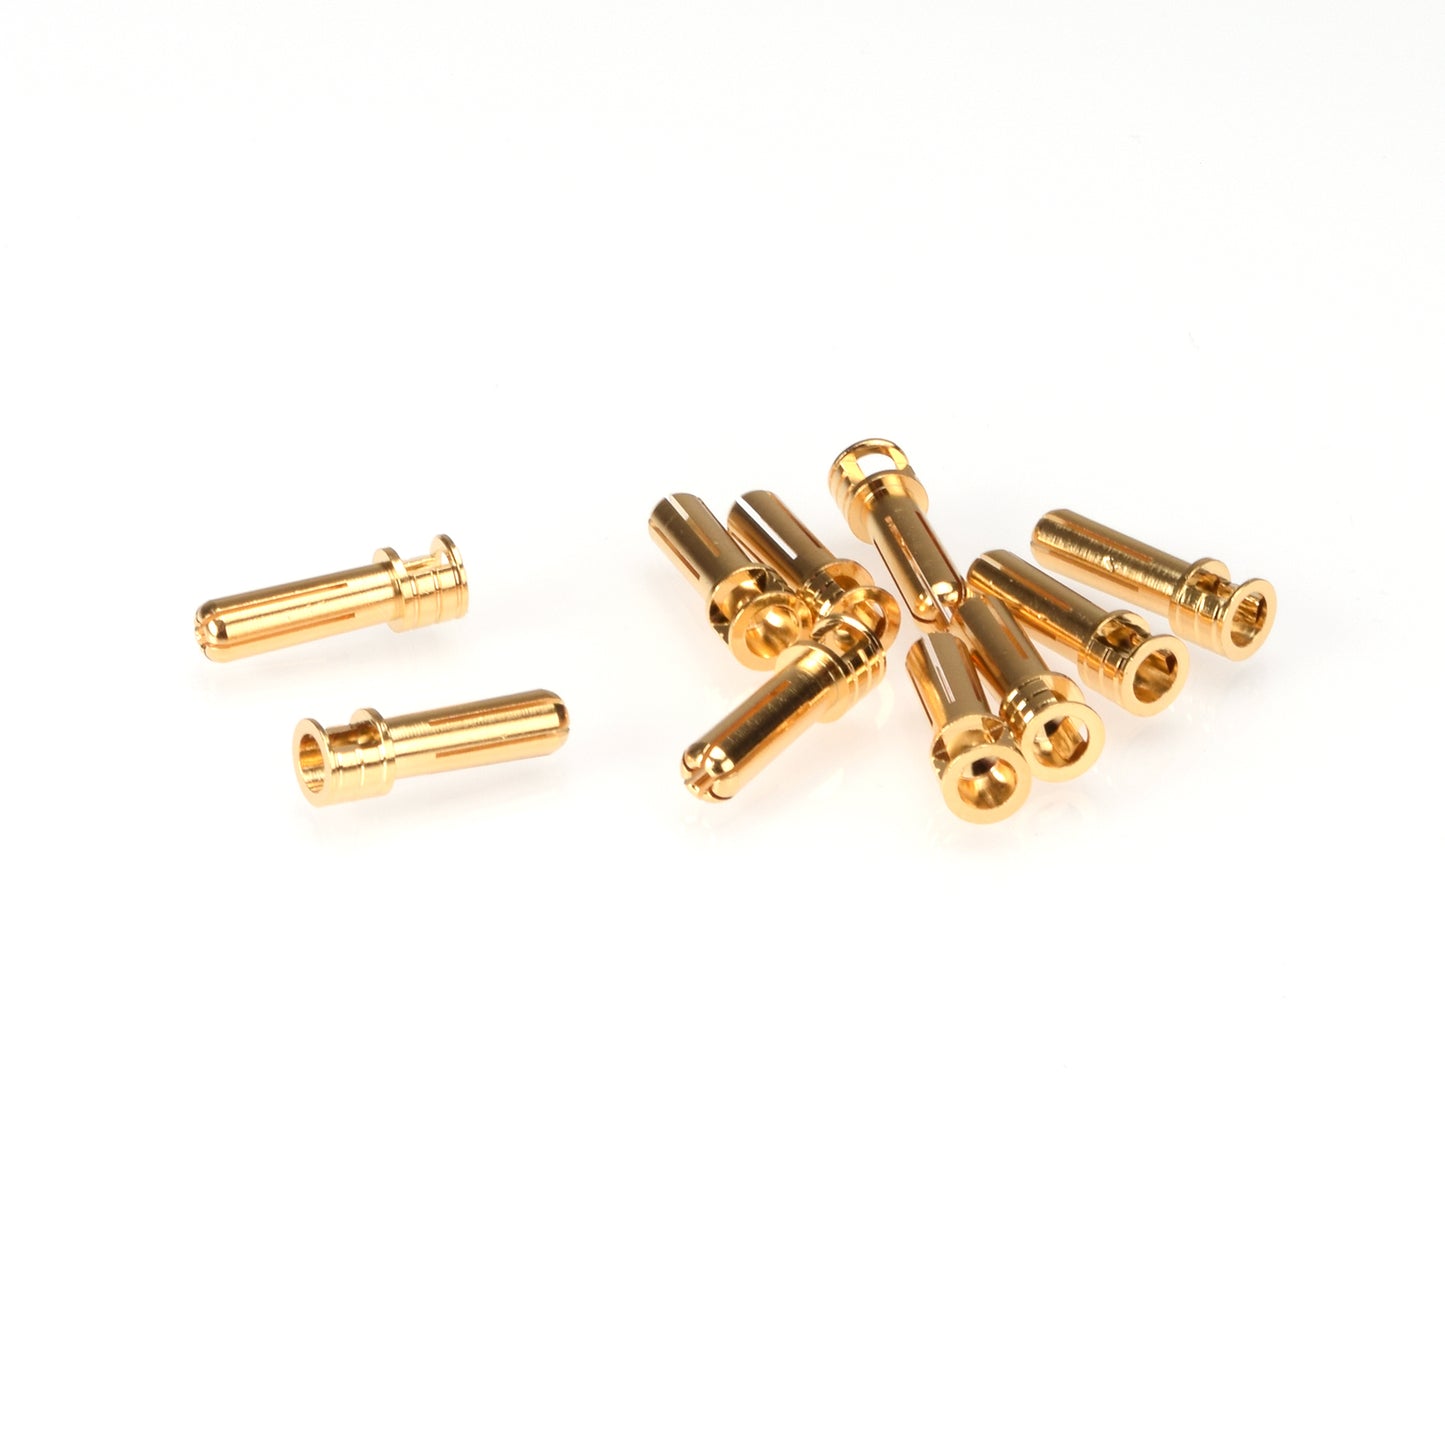 5mm Gold Plug Male Cooling Head, Koelkop ontwerp (10 stuks)